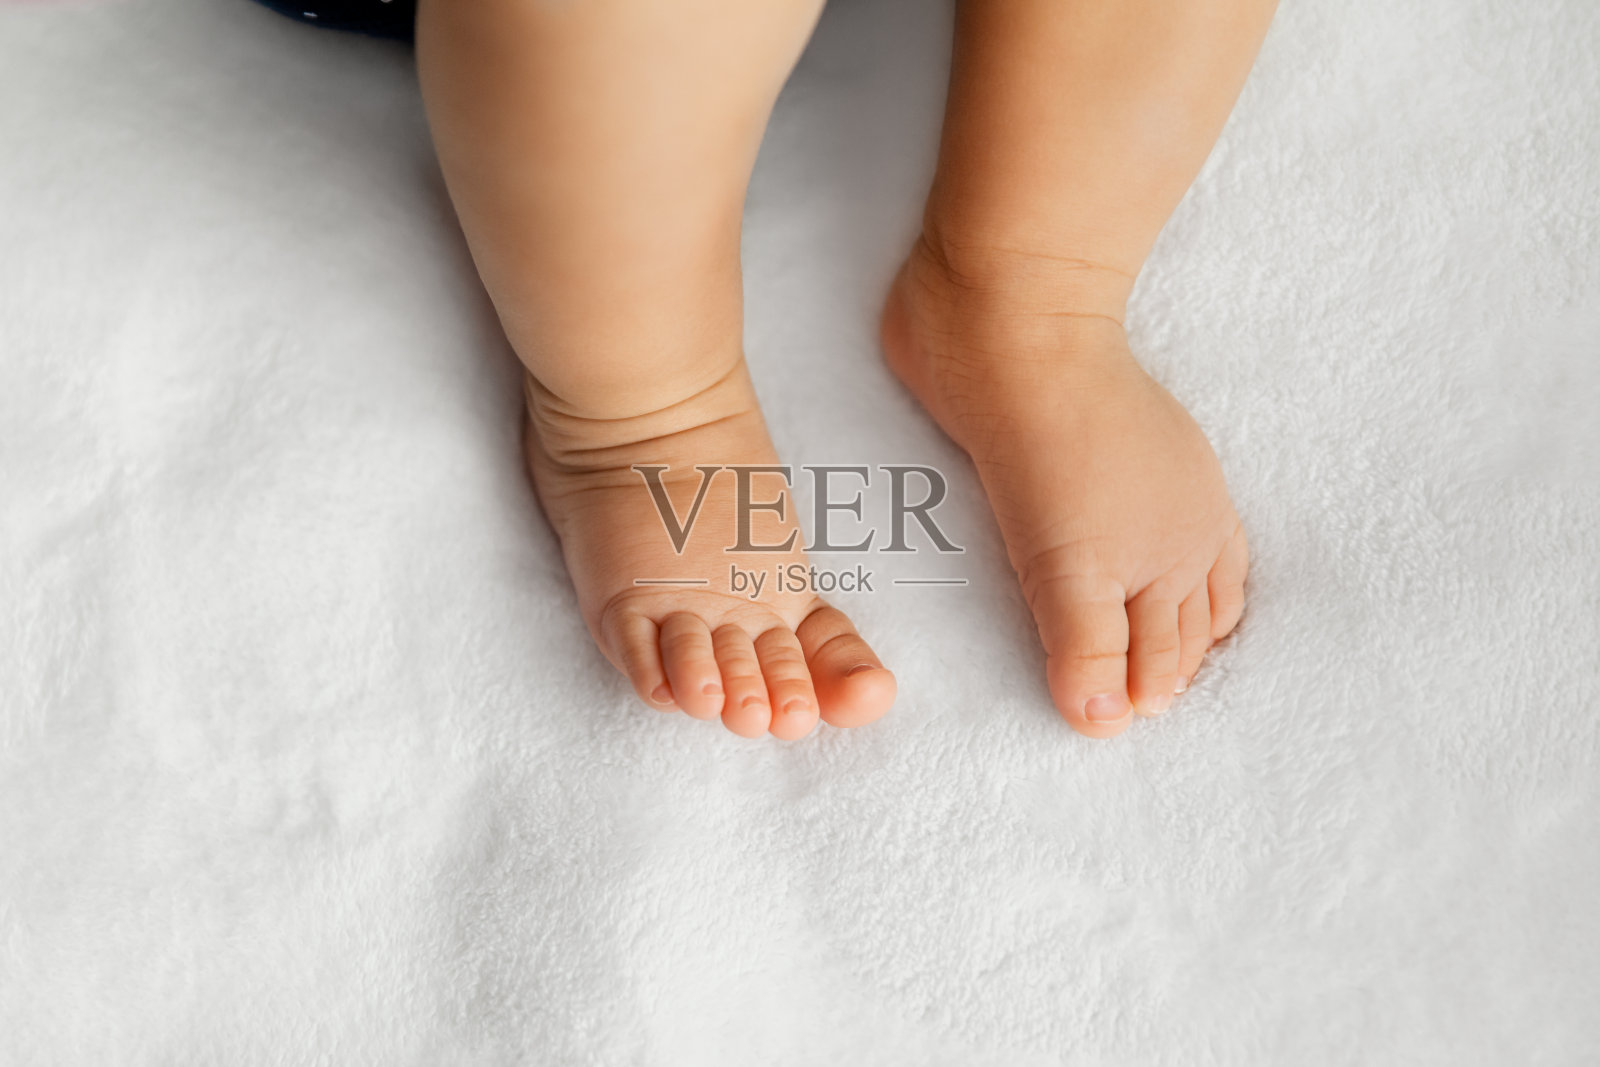 婴儿的腿放在柔软的白色毯子上作为背景，在自然光下，婴儿的脚照片摄影图片